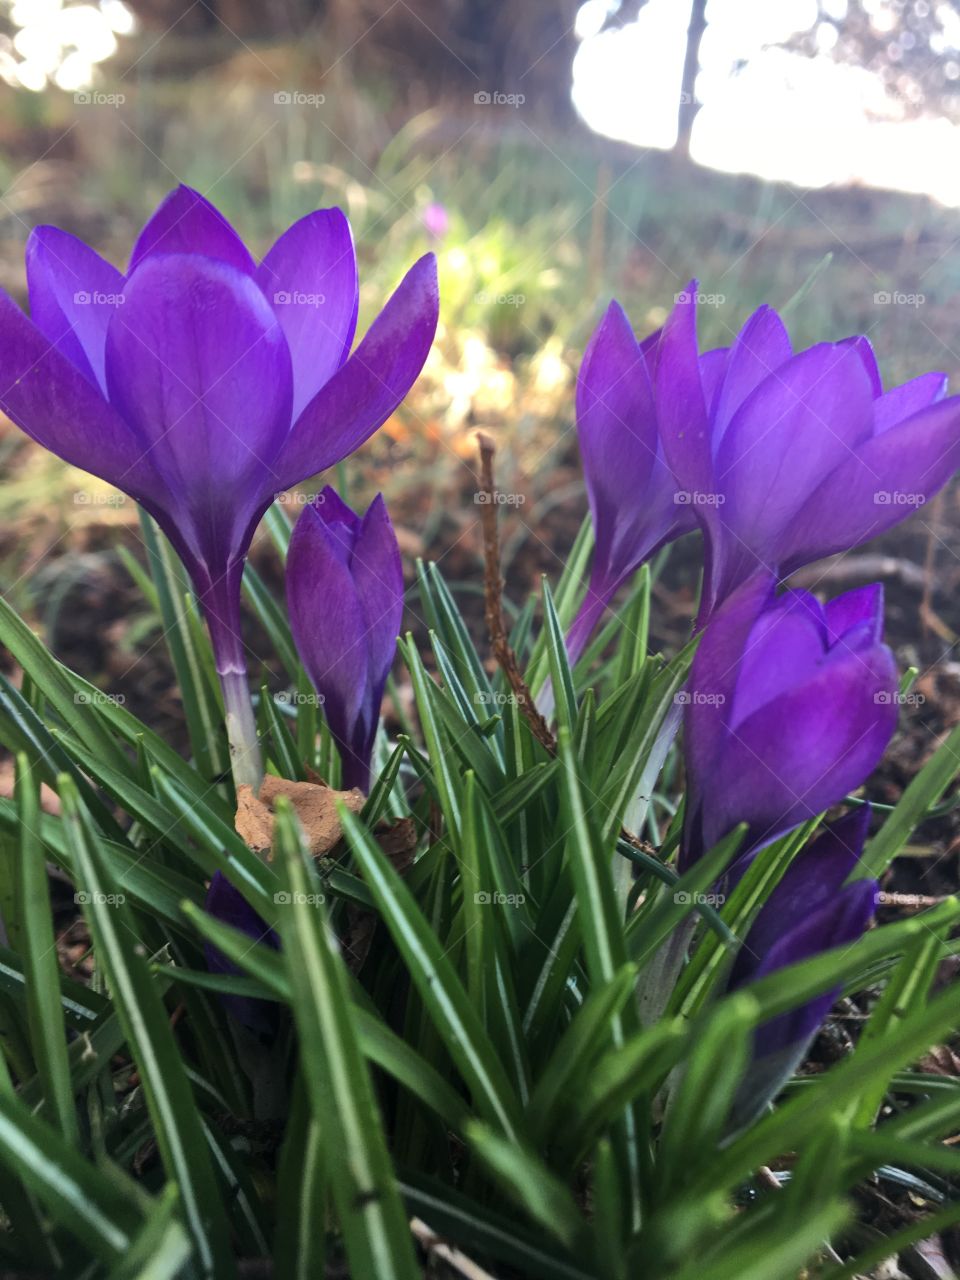 Purple flowers in a field from macro level 